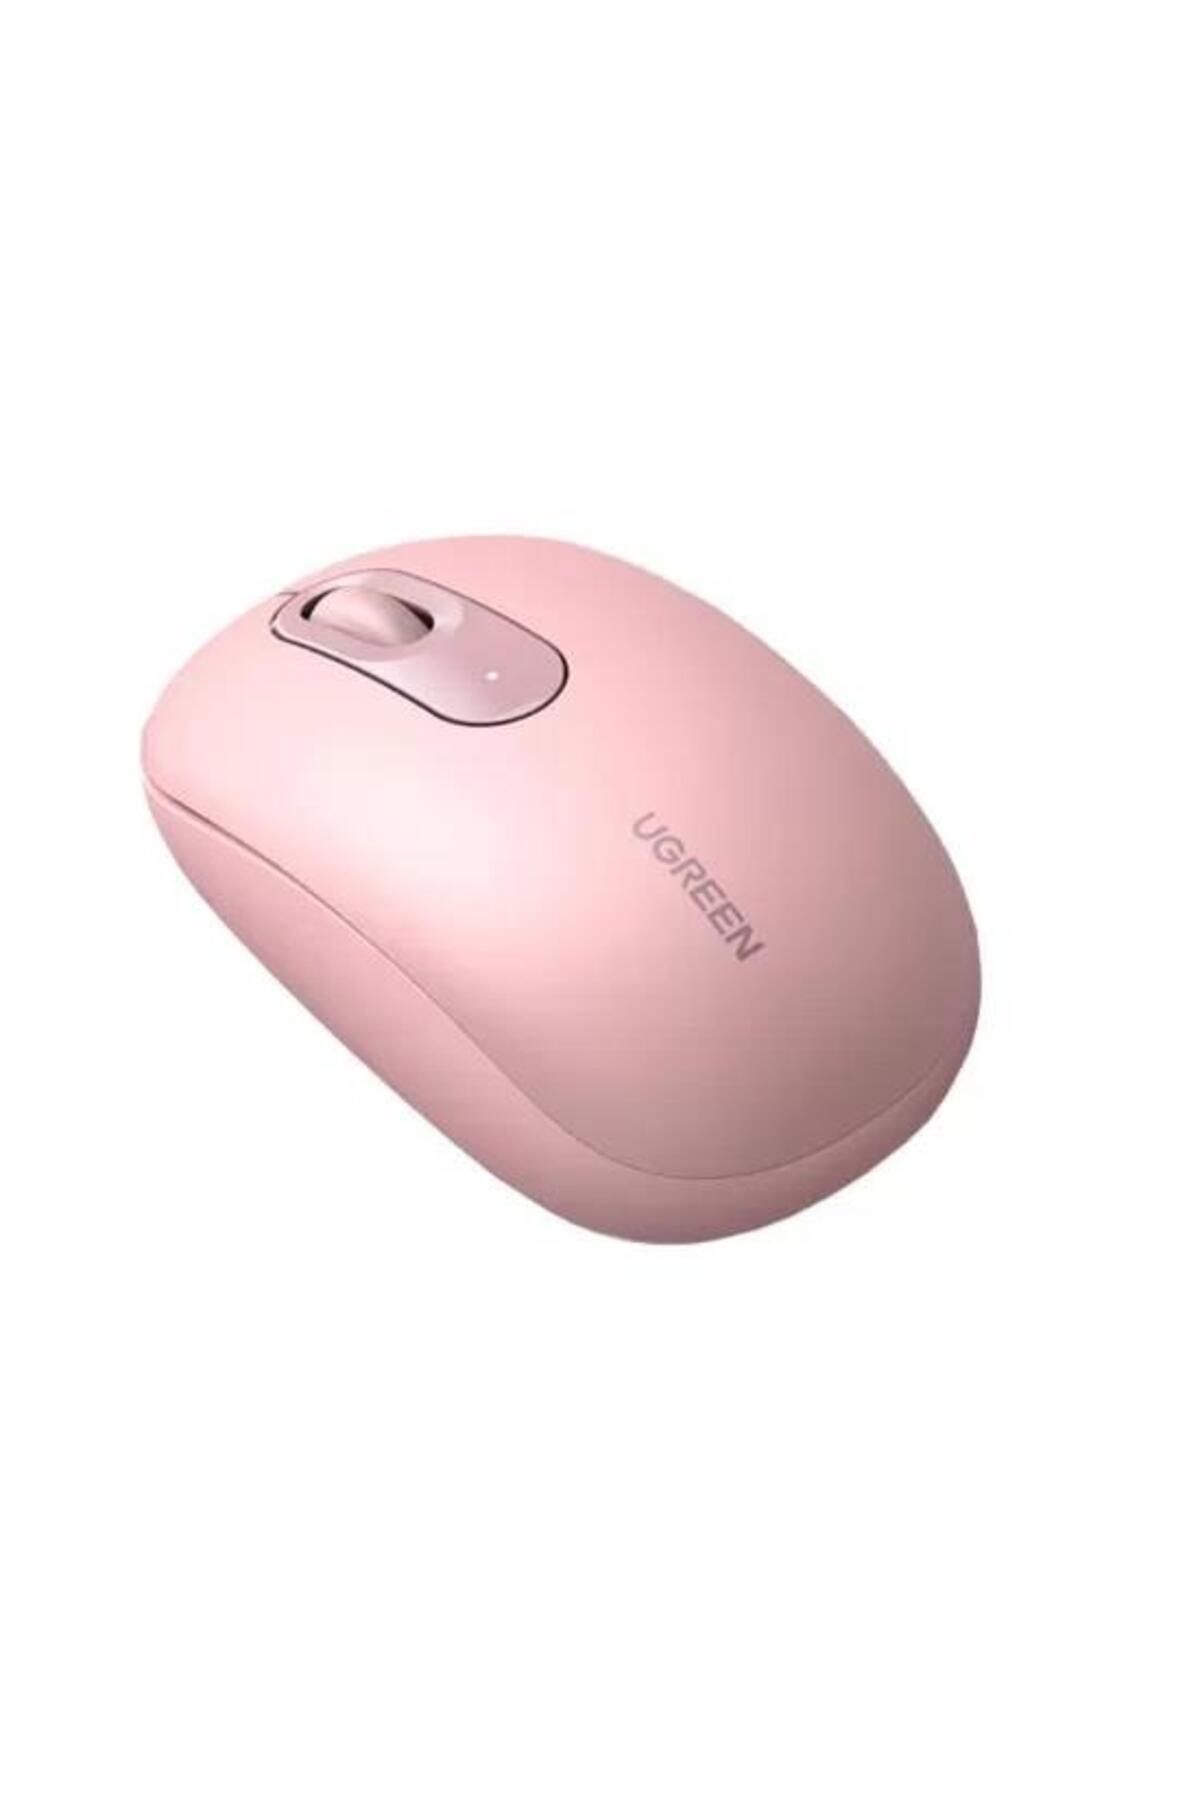 Genel Markalar 2400dpı 2.4ghz Wireless Kablosuz Sessiz Mouse Pembe Modern Tasarım 431550